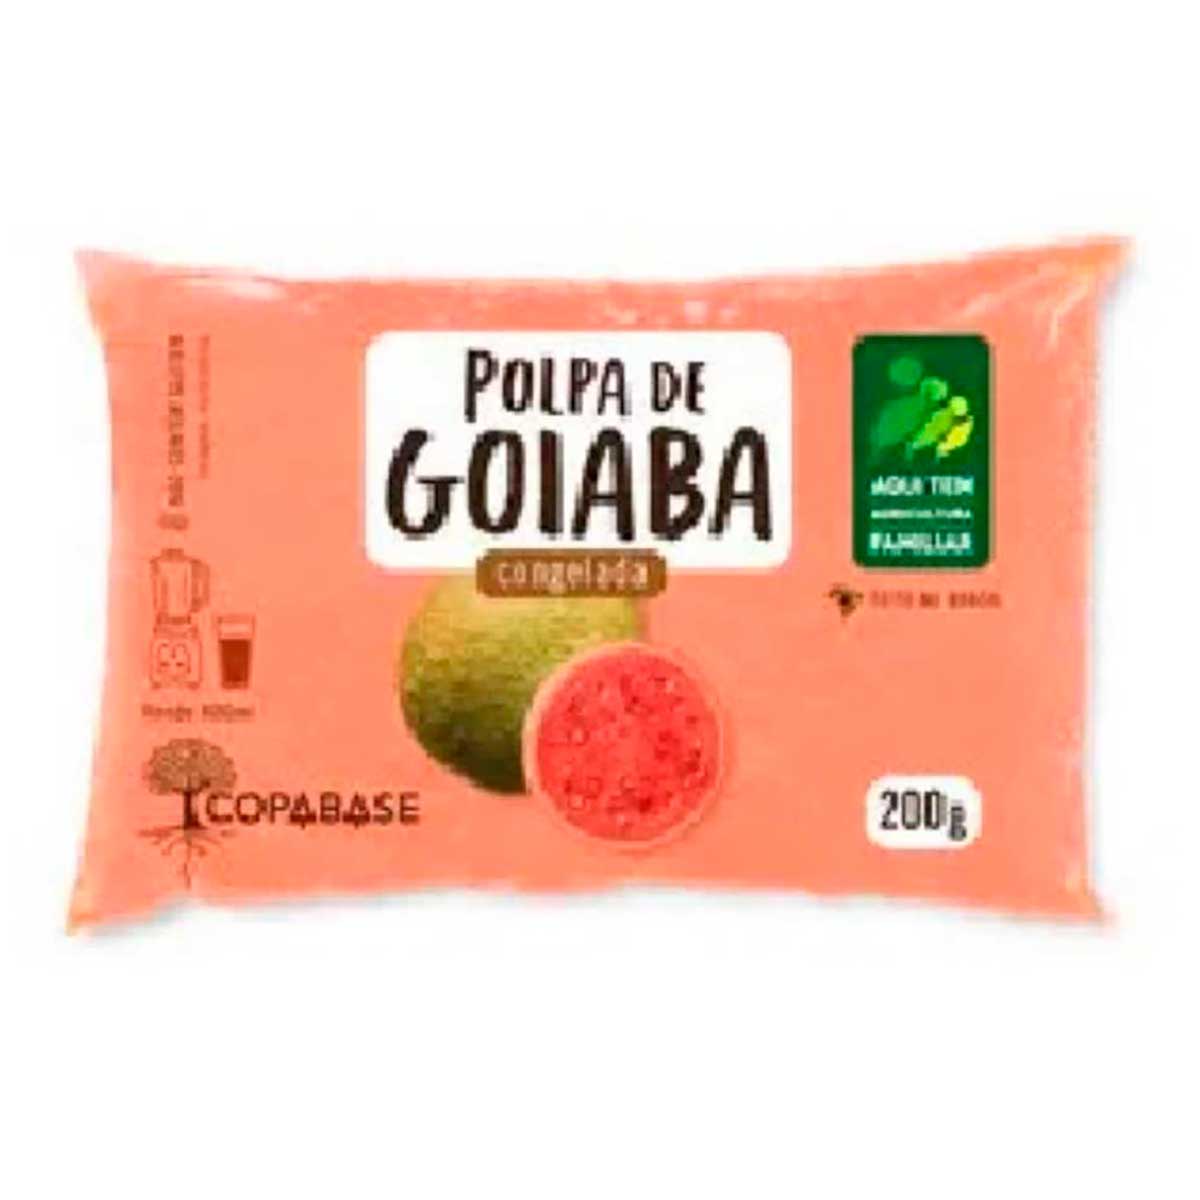 polpa-congelada-cobase-goiaba-200-g-1.jpg